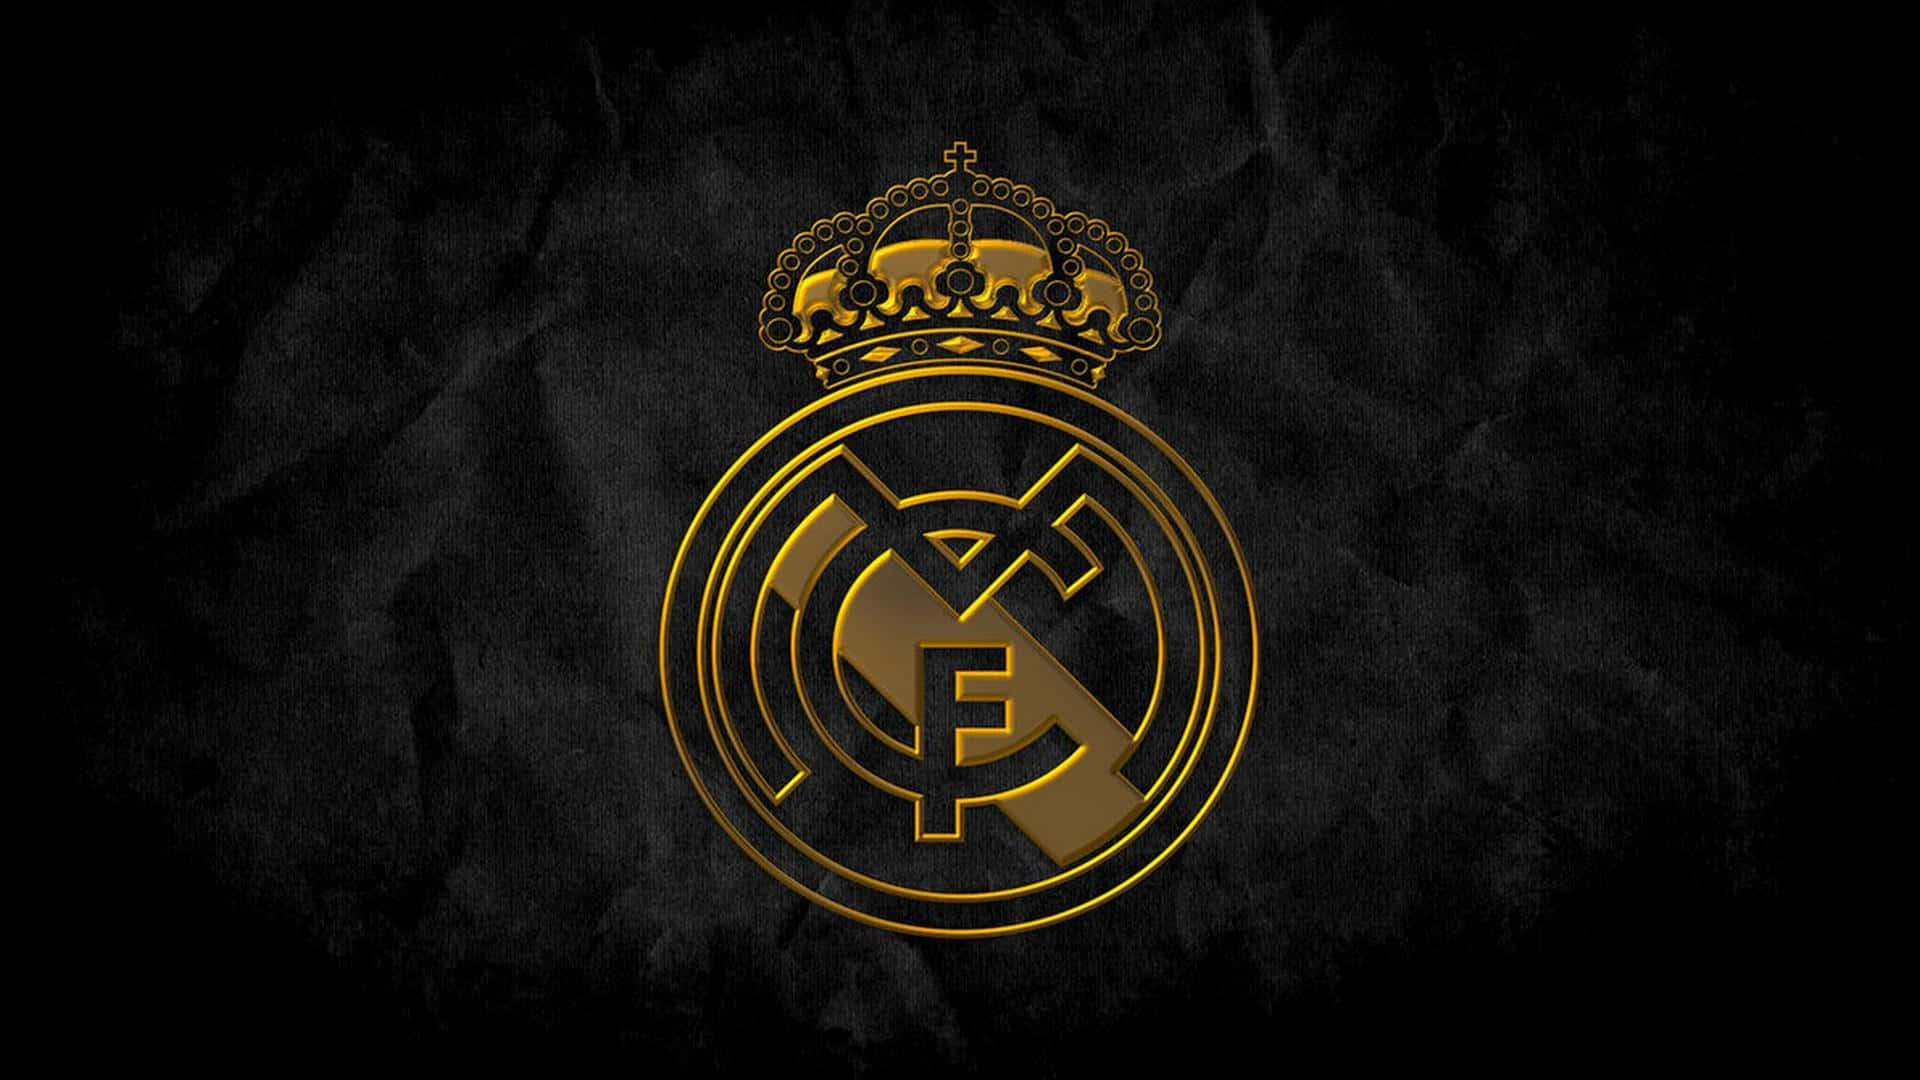 Real Madrid Emblemon Black Background Wallpaper